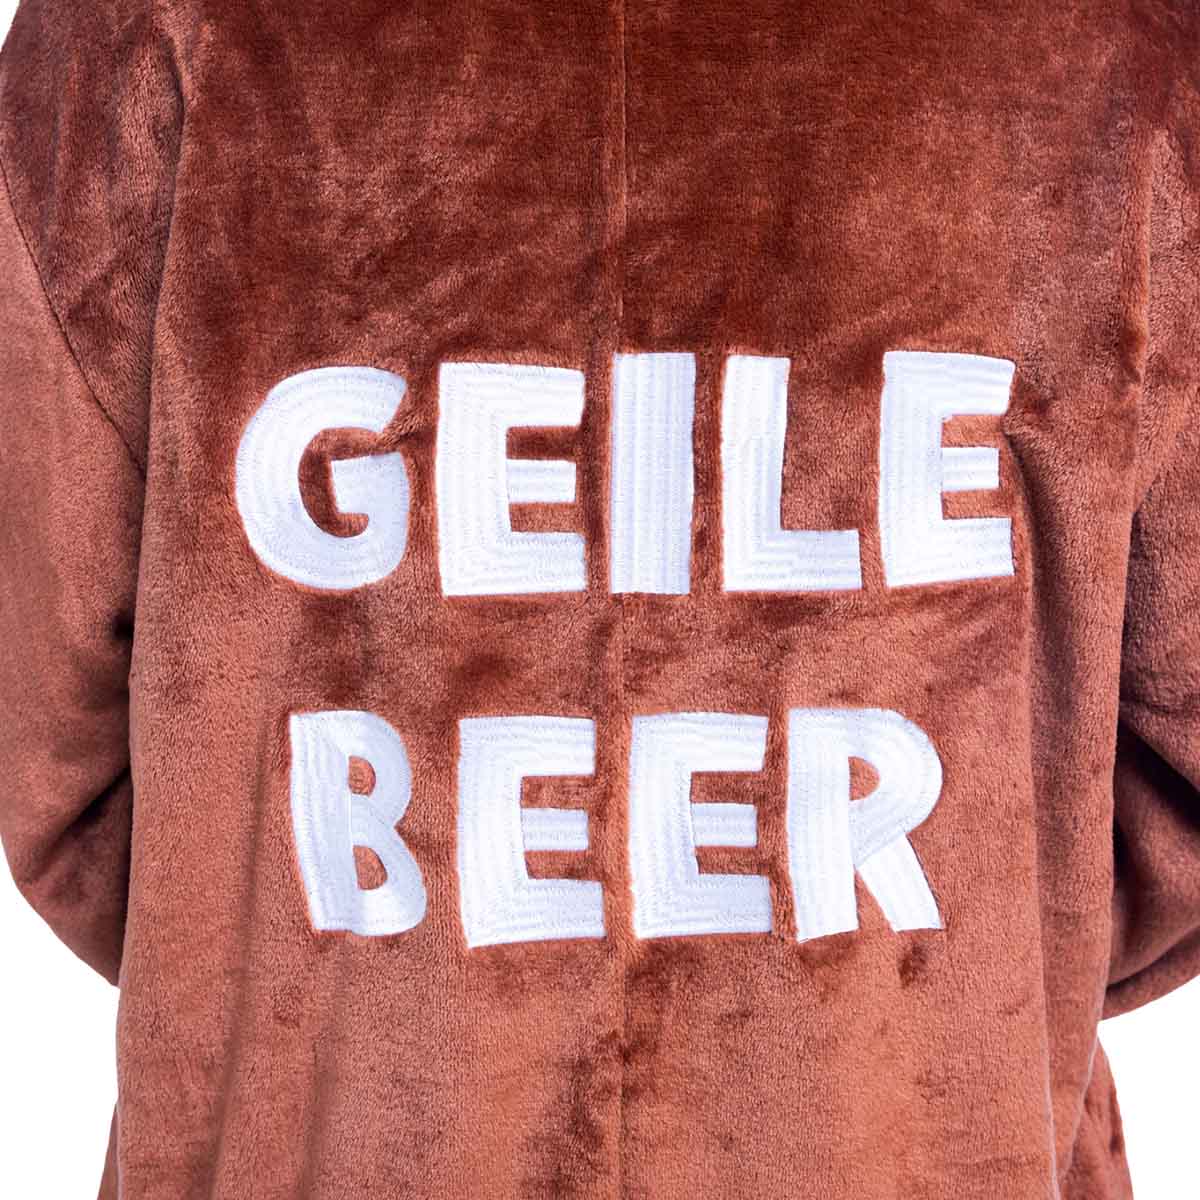 Beer-onesie-Geile-beer-4